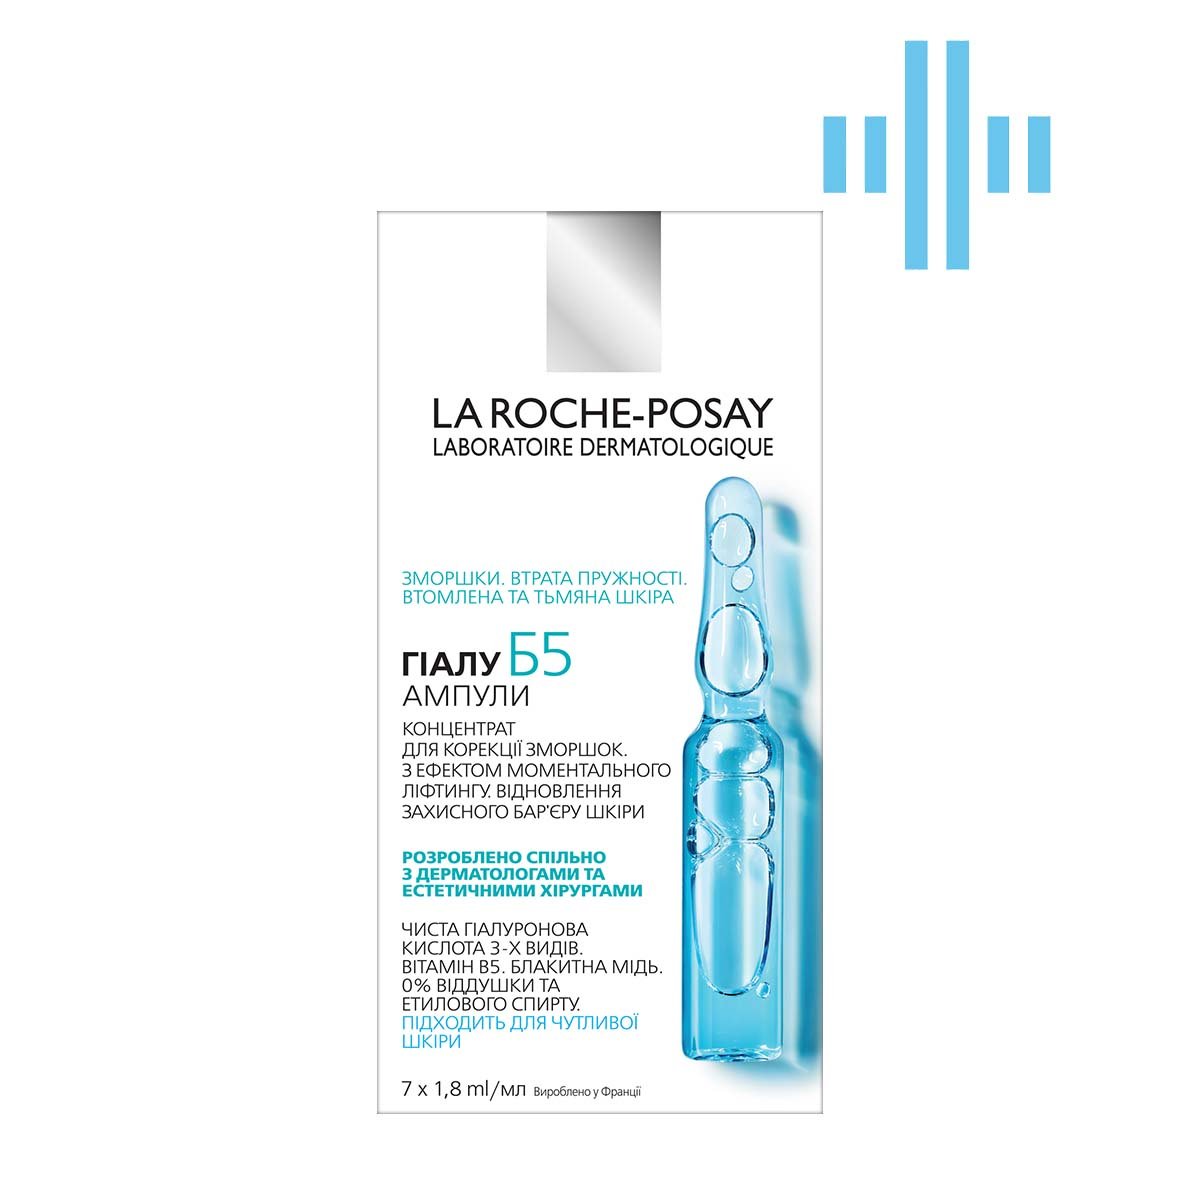 Концентрат в ампулах для коррекции морщин и восстановления упругости кожи лица La Roche-Posay Hyalu B5 Ampoules, 12,6 мл (7 ампул по 1,8 мл) (MB409800) - фото 1